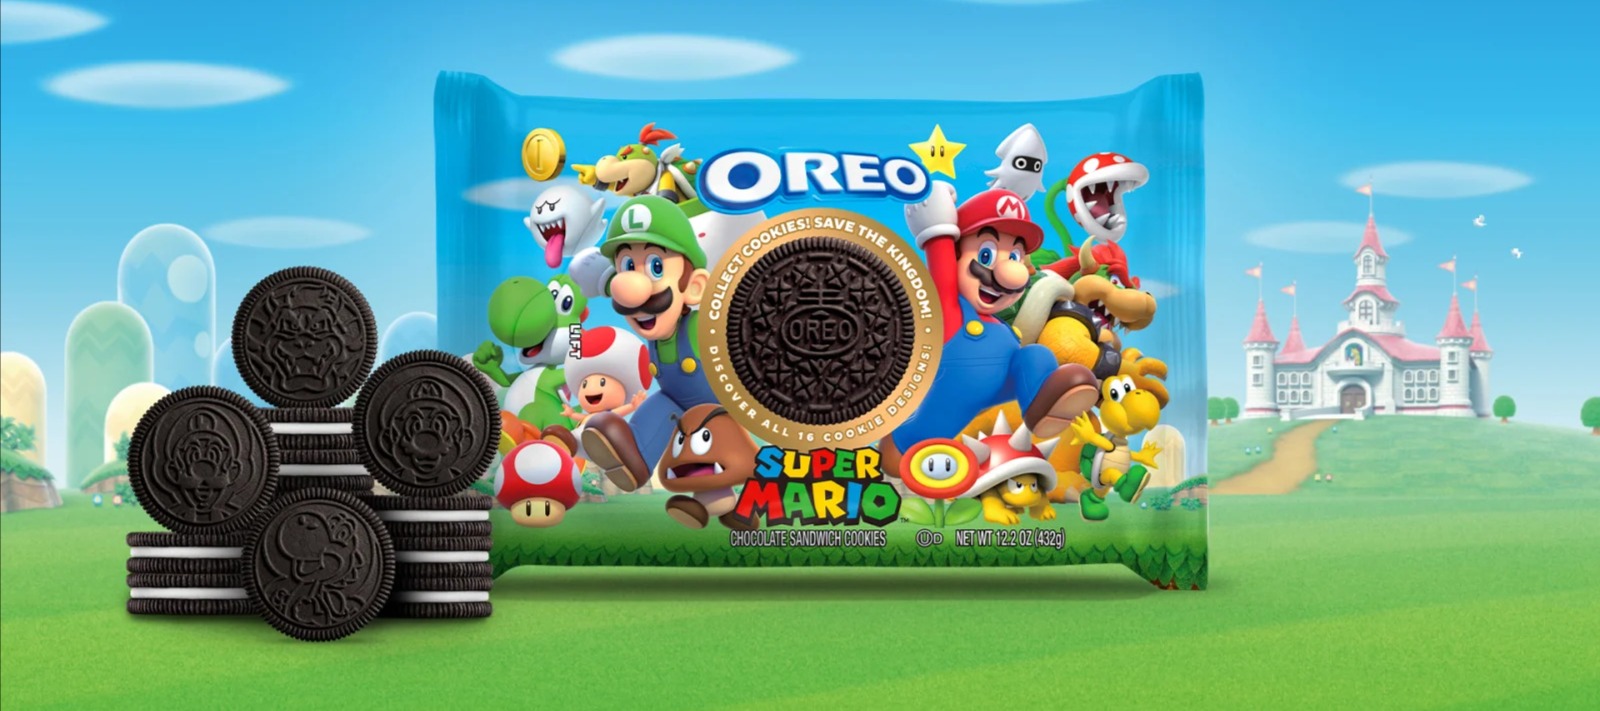 Фото новости: "Oreo выпустил линейку печенья с героями Super Mario"